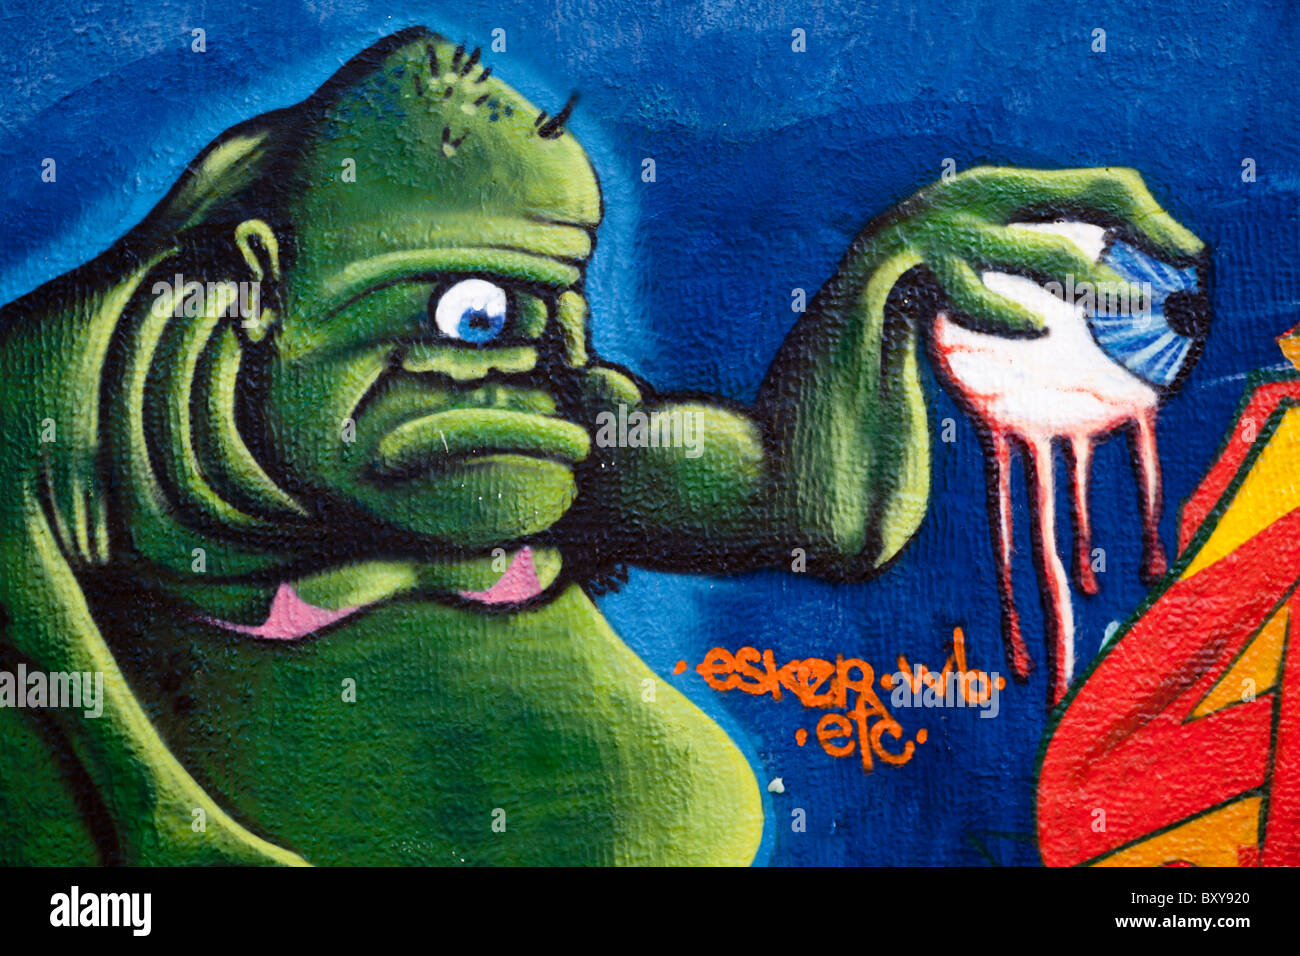 Wall mural depicting a green monster along a street in the Spanish colonial city of Santiago de Queretaro, Queretaro, Mexico Stock Photo